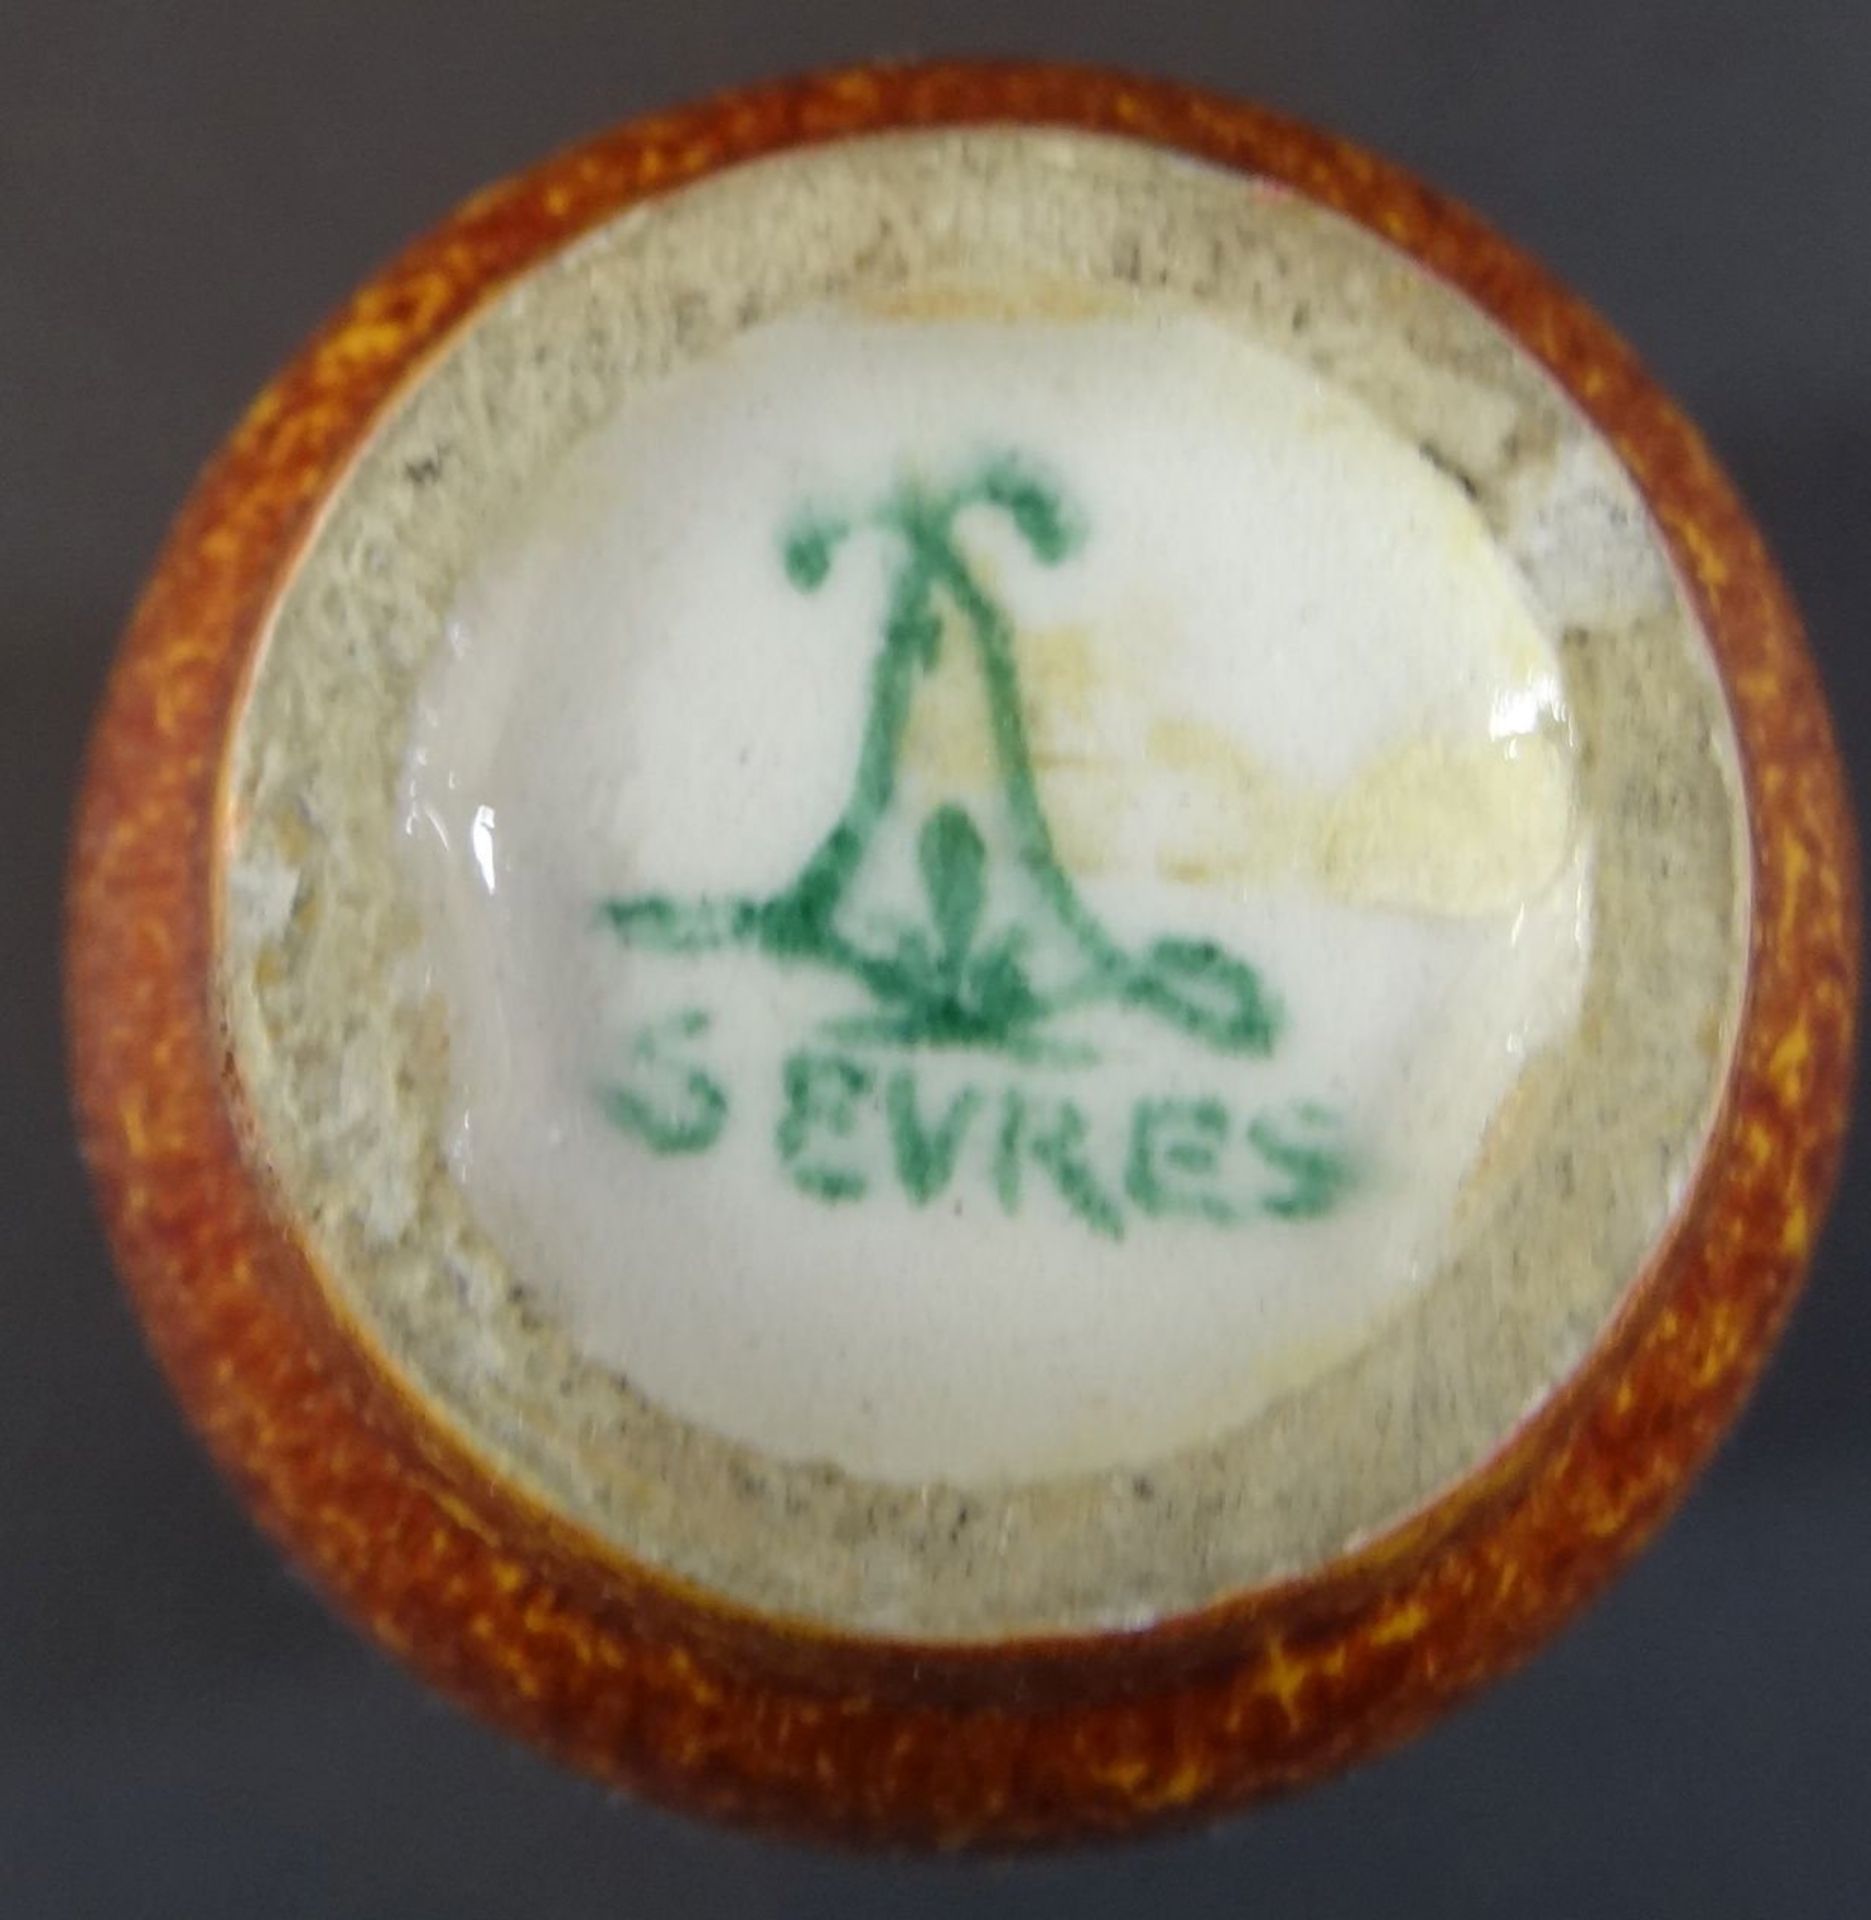 kl. Jugendstilvase "Sevres", vergoldete Bronzemontur, H-8 cm, minim. Abplatzer am Rand und feiner A - Bild 4 aus 4